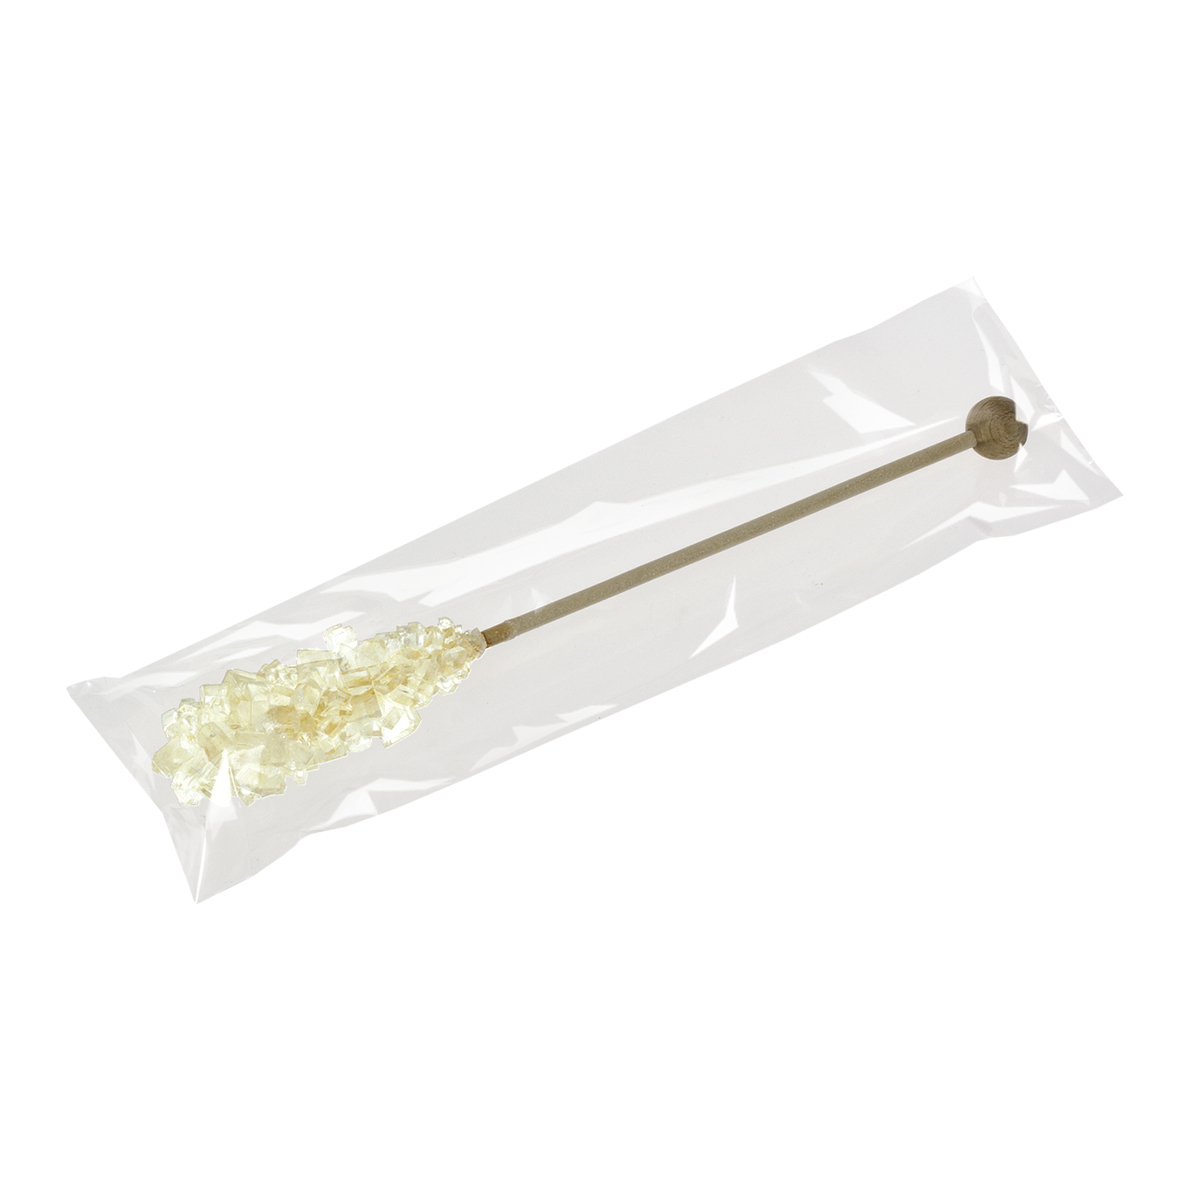 Candy Sugar Sticks in foil, 17cm, white